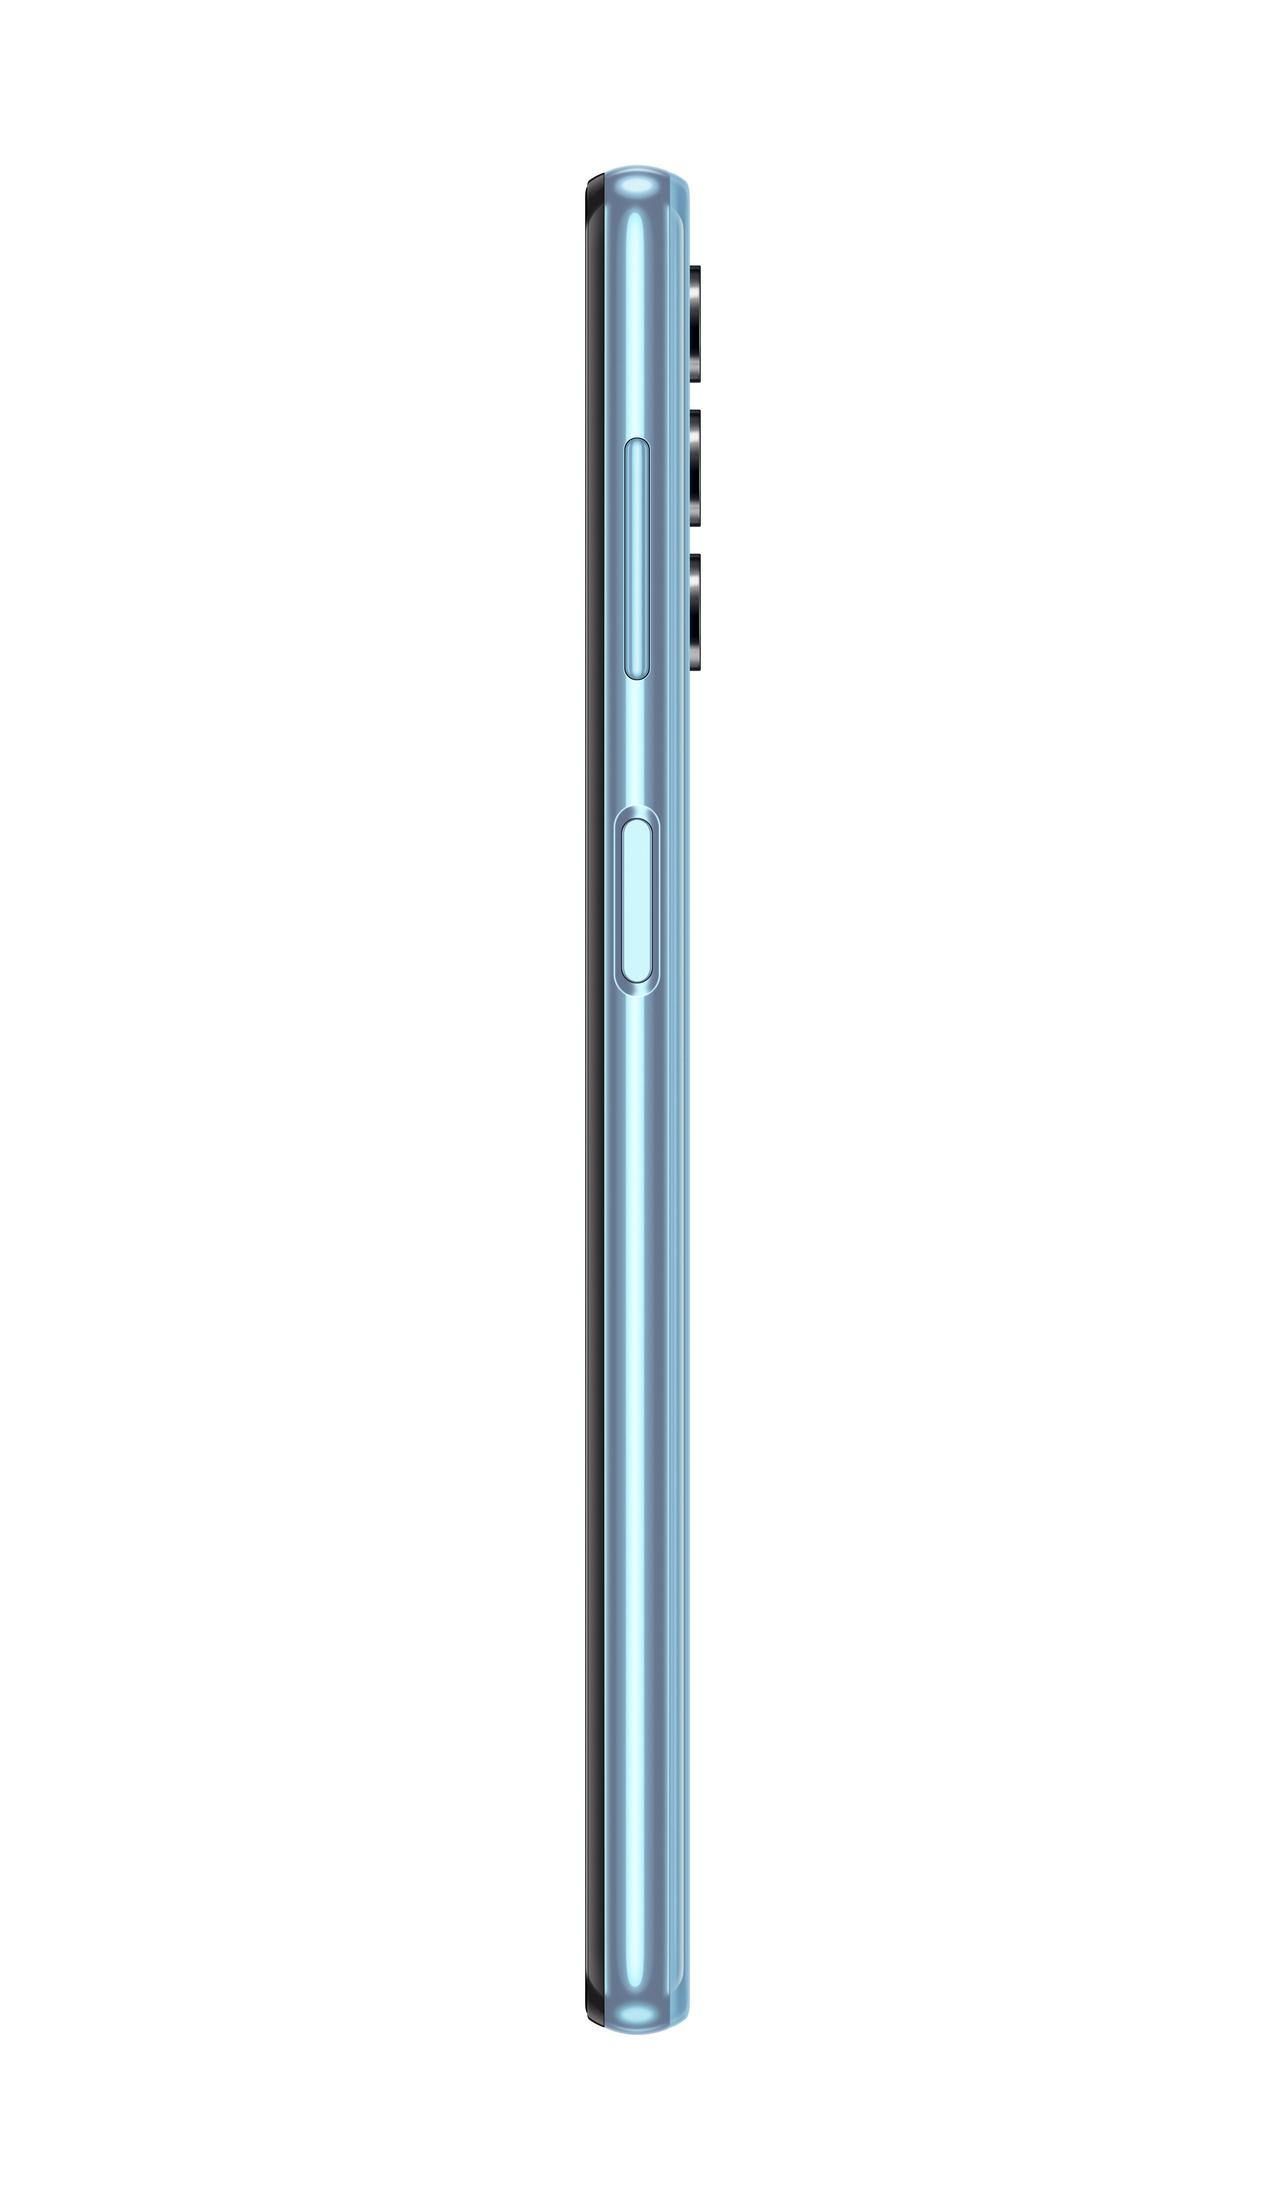 128 A32 Dual Blau SAMSUNG 5G SIM GB